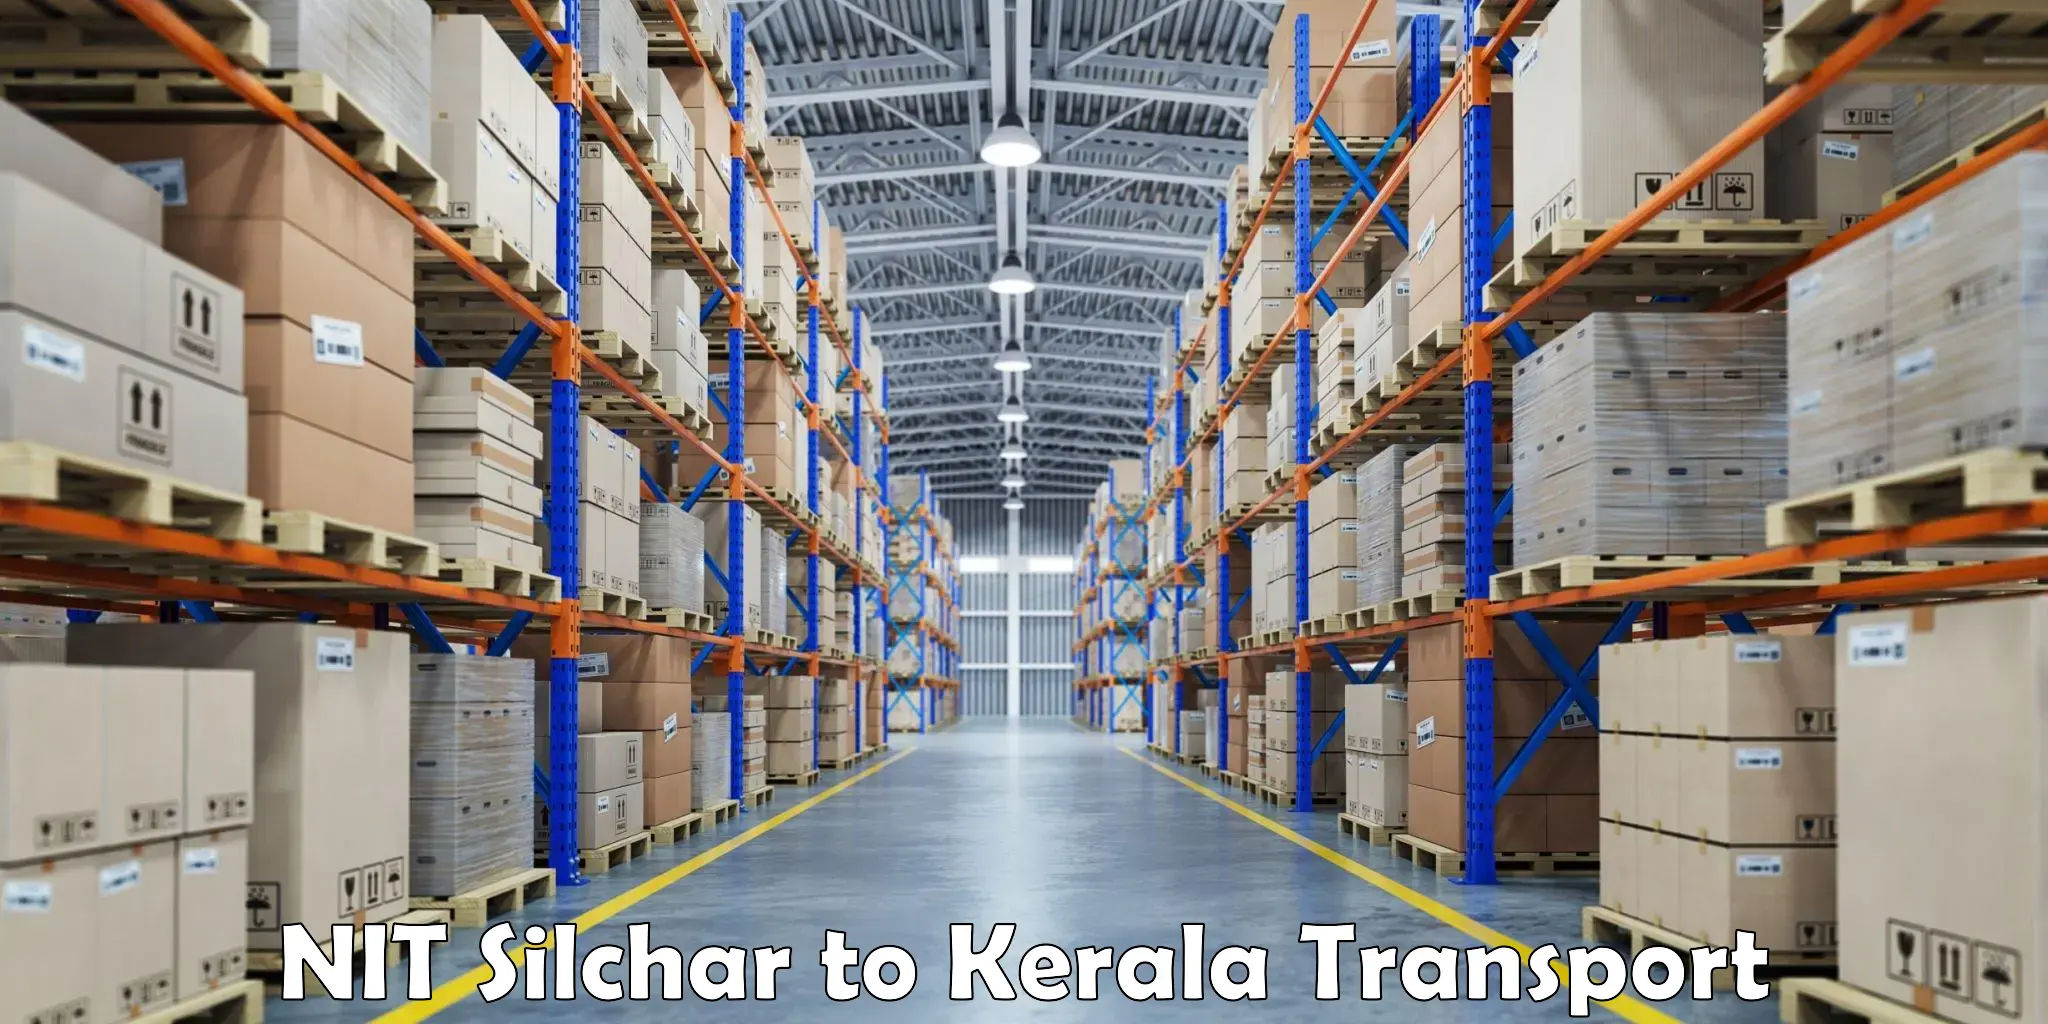 Furniture transport service NIT Silchar to Manthuka